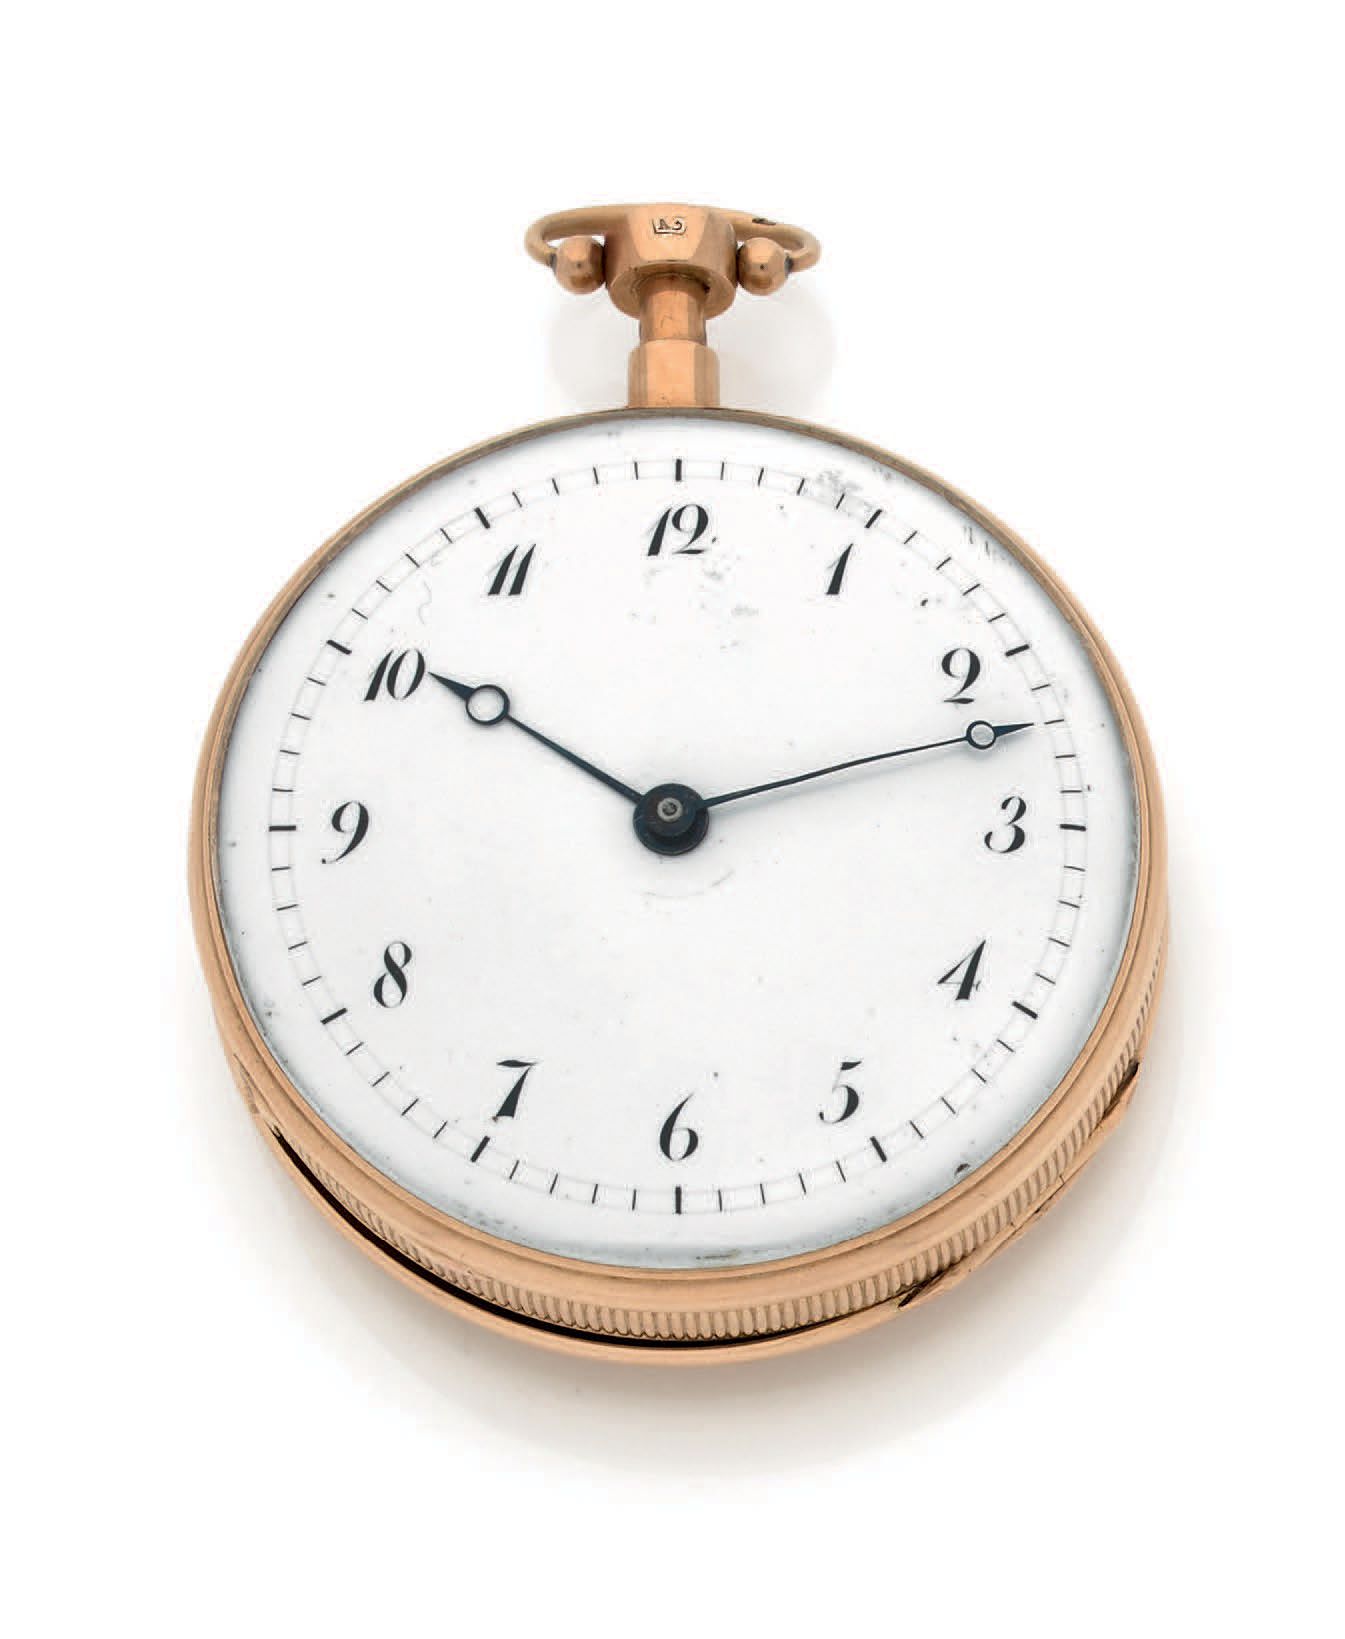 ANONYME Nº 1059
Reloj de bolsillo de oro de 18 quilates (750) con música y soner&hellip;